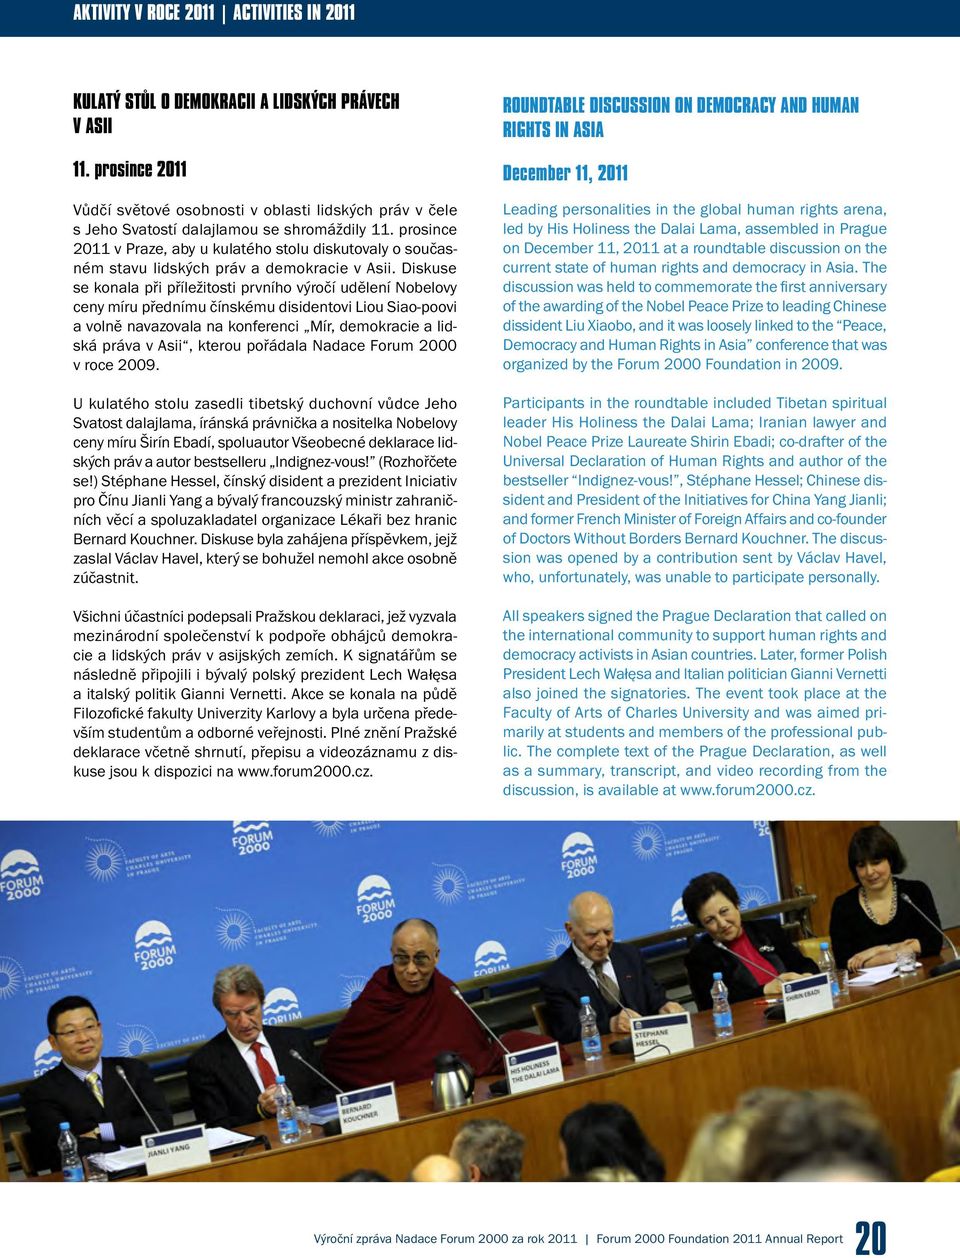 prosince 2011 v Praze, aby u kulatého stolu diskutovaly o současném stavu lidských práv a demokracie v Asii.